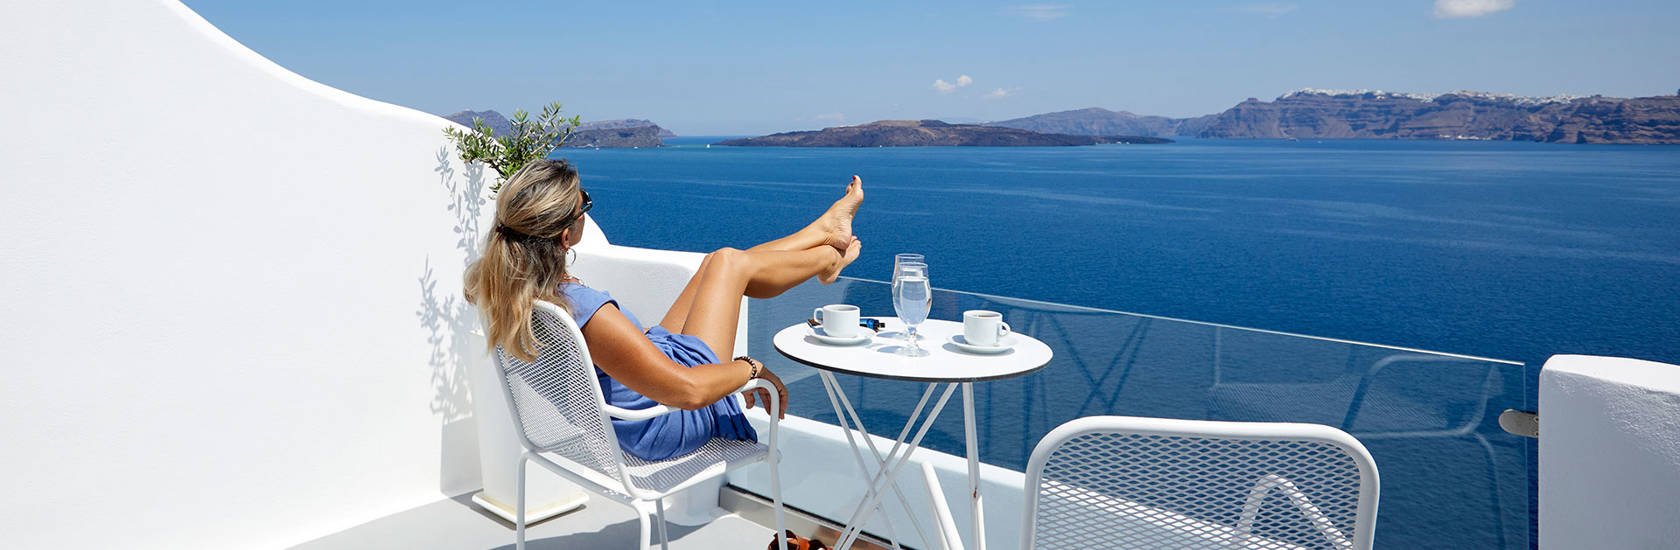 
Santorini View Hotel woman seating at a balcony looking at the caldera and  sea view